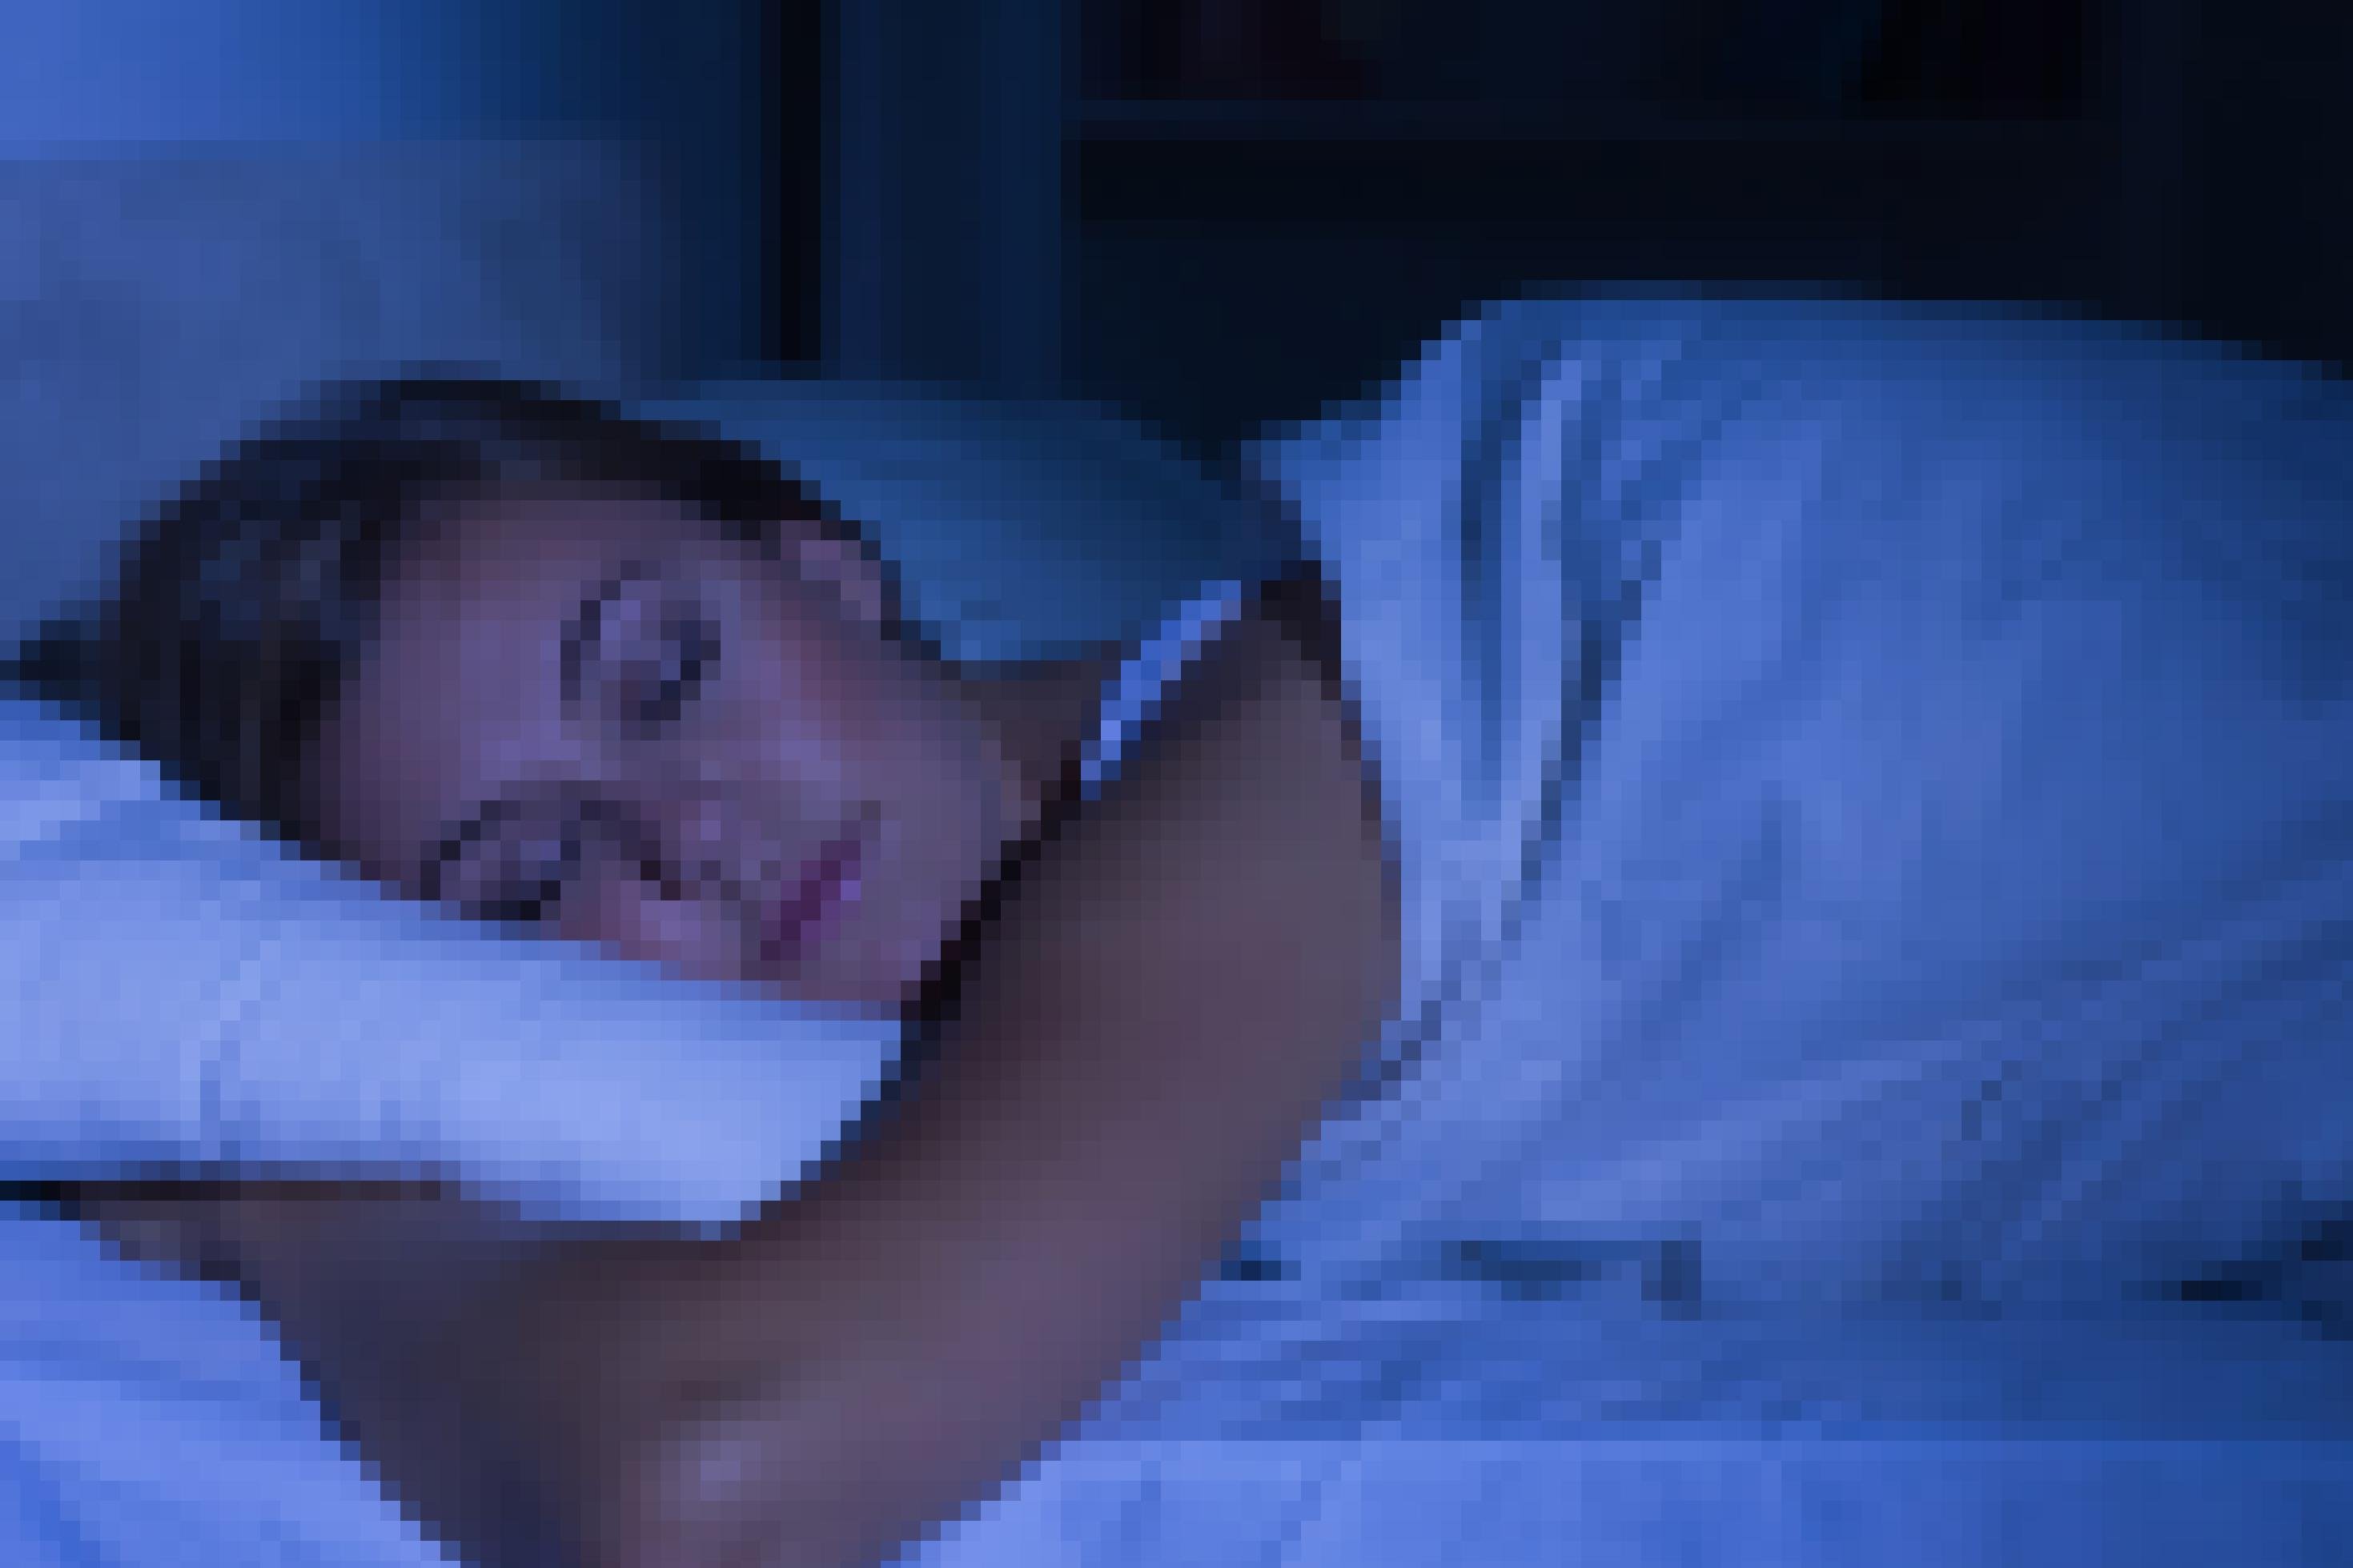 Das Foto zeigt Kopf, Arm und Schulter einer jungen Frau, die eingekuschelt in ihre Bettdecke friedlich schlummert. Die Szene ist in blaues, dämmrig wirkendes Licht getaucht.